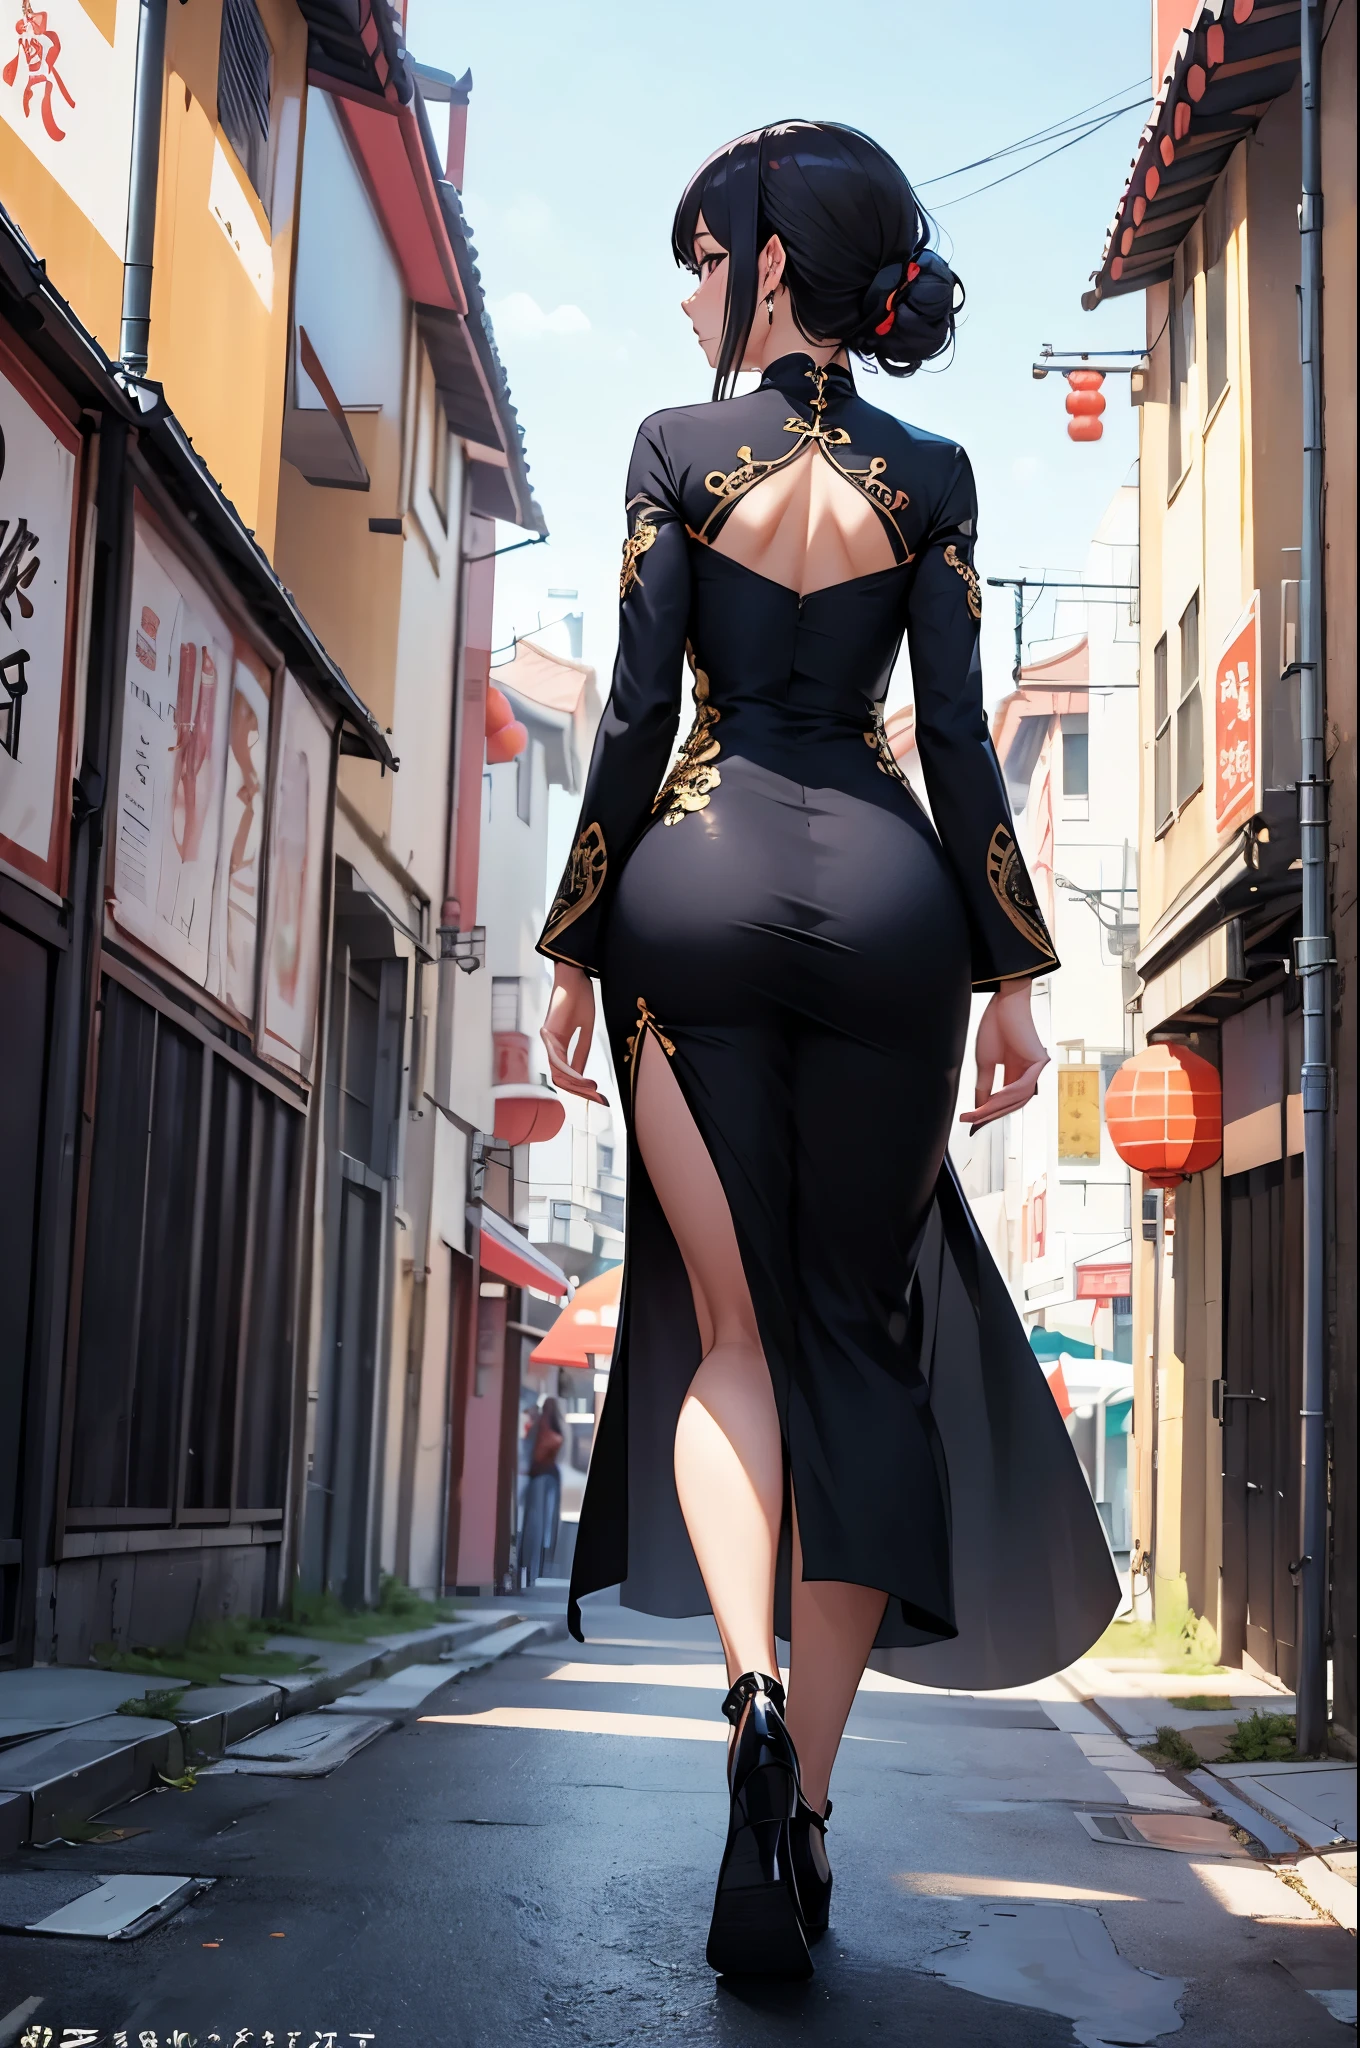 uma mulher sexy, (melhor qualidade), (Obra de arte), (1 garota), magro, anime, (Vestido chinês), (andando), (retrato), (visão de corpo inteiro), (vista por trás), (olhando para a esquerda)
